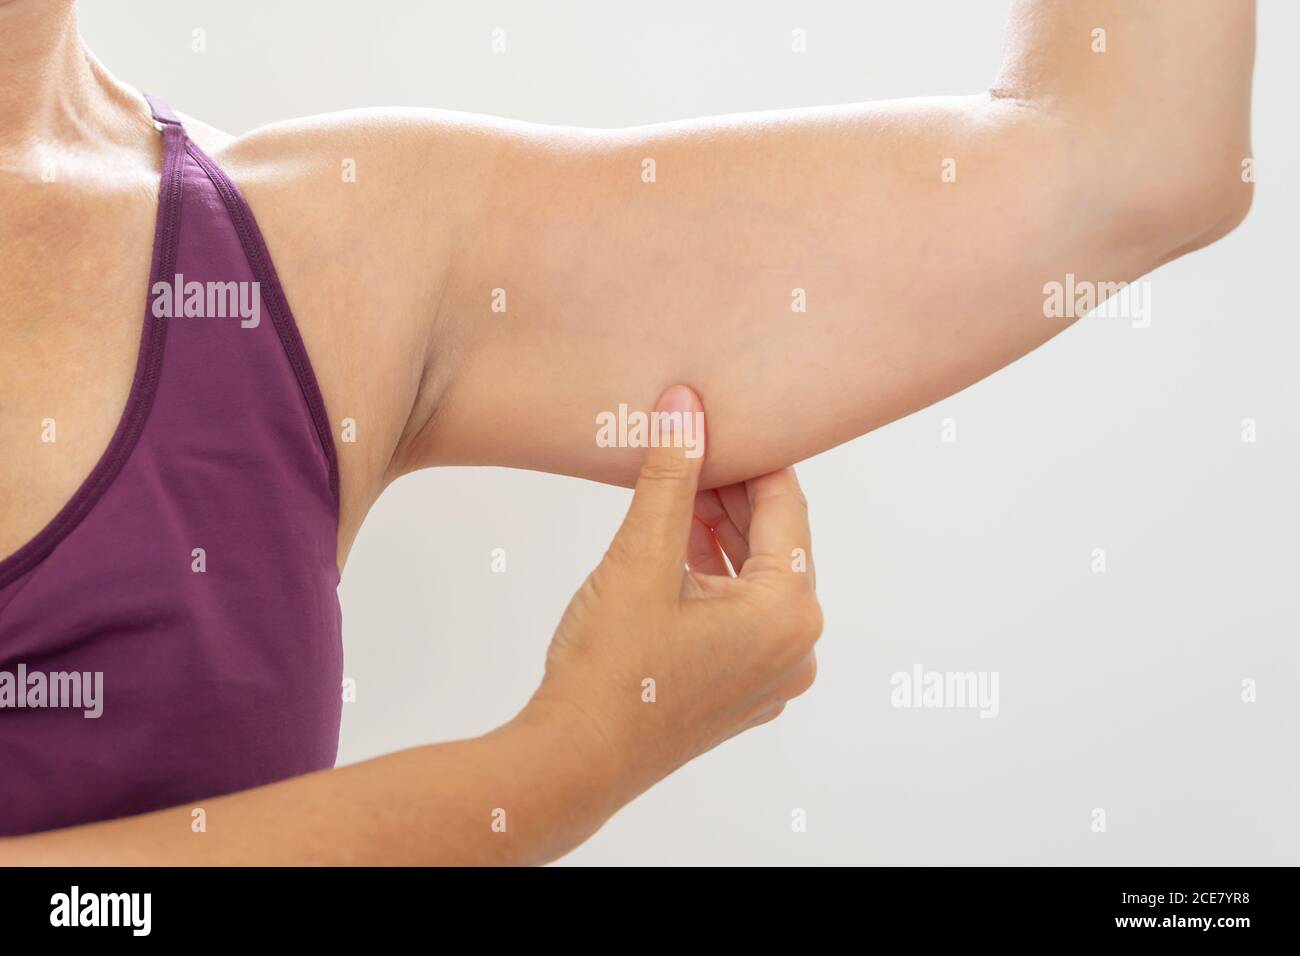 Femme mature pinçant bras de flabby, soins du corps et concept de forme physique Banque D'Images